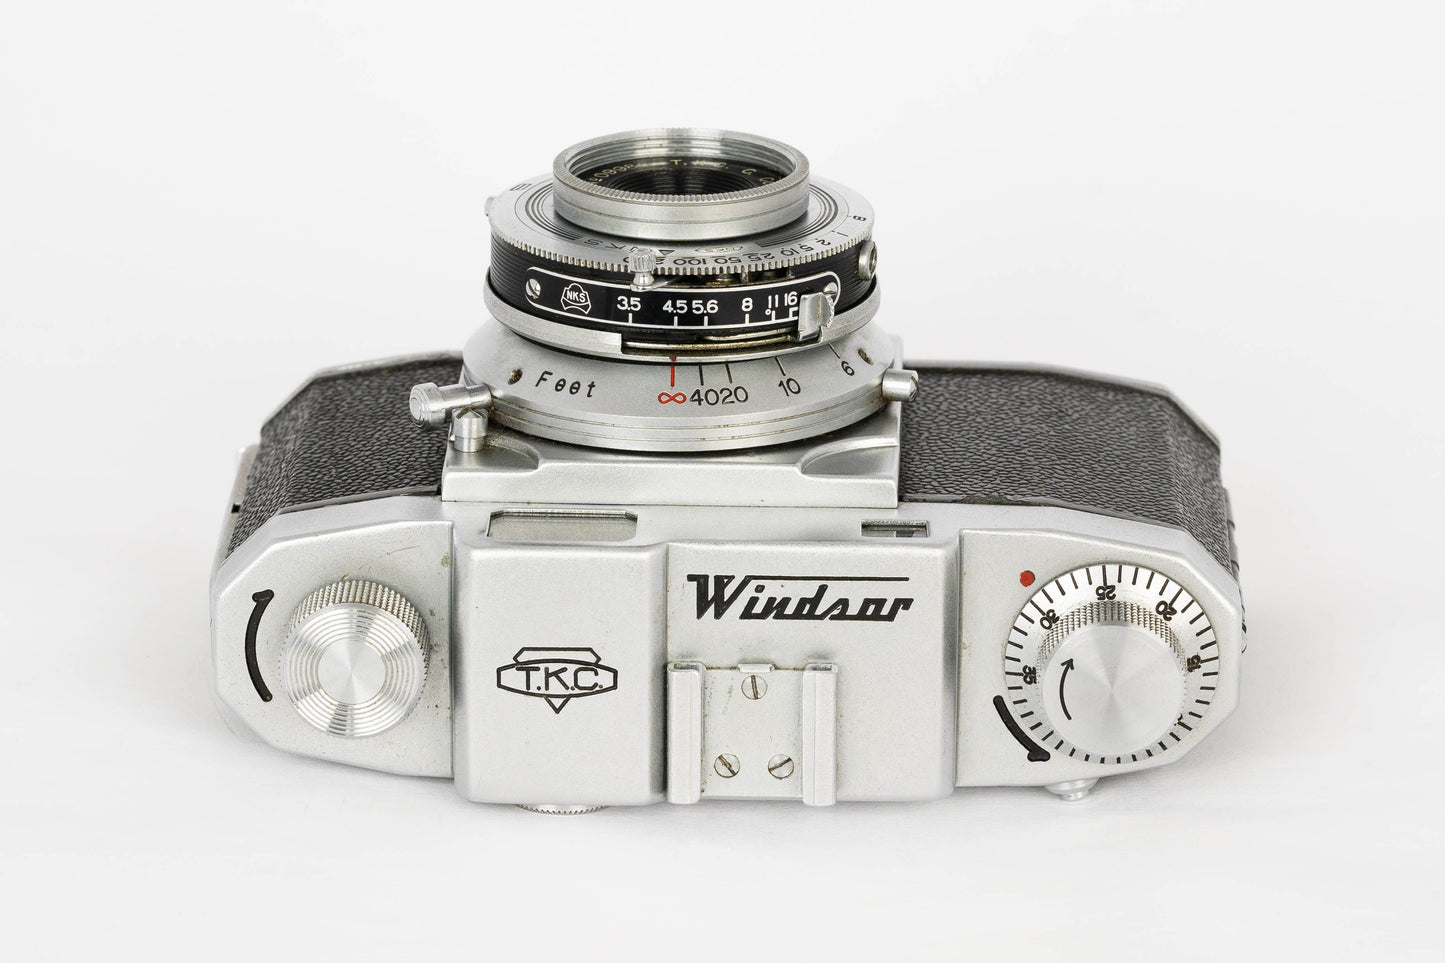 T.K.C. Windsor 35 Film Camera Color Sygmar 50mm f3.5 (Rarely)